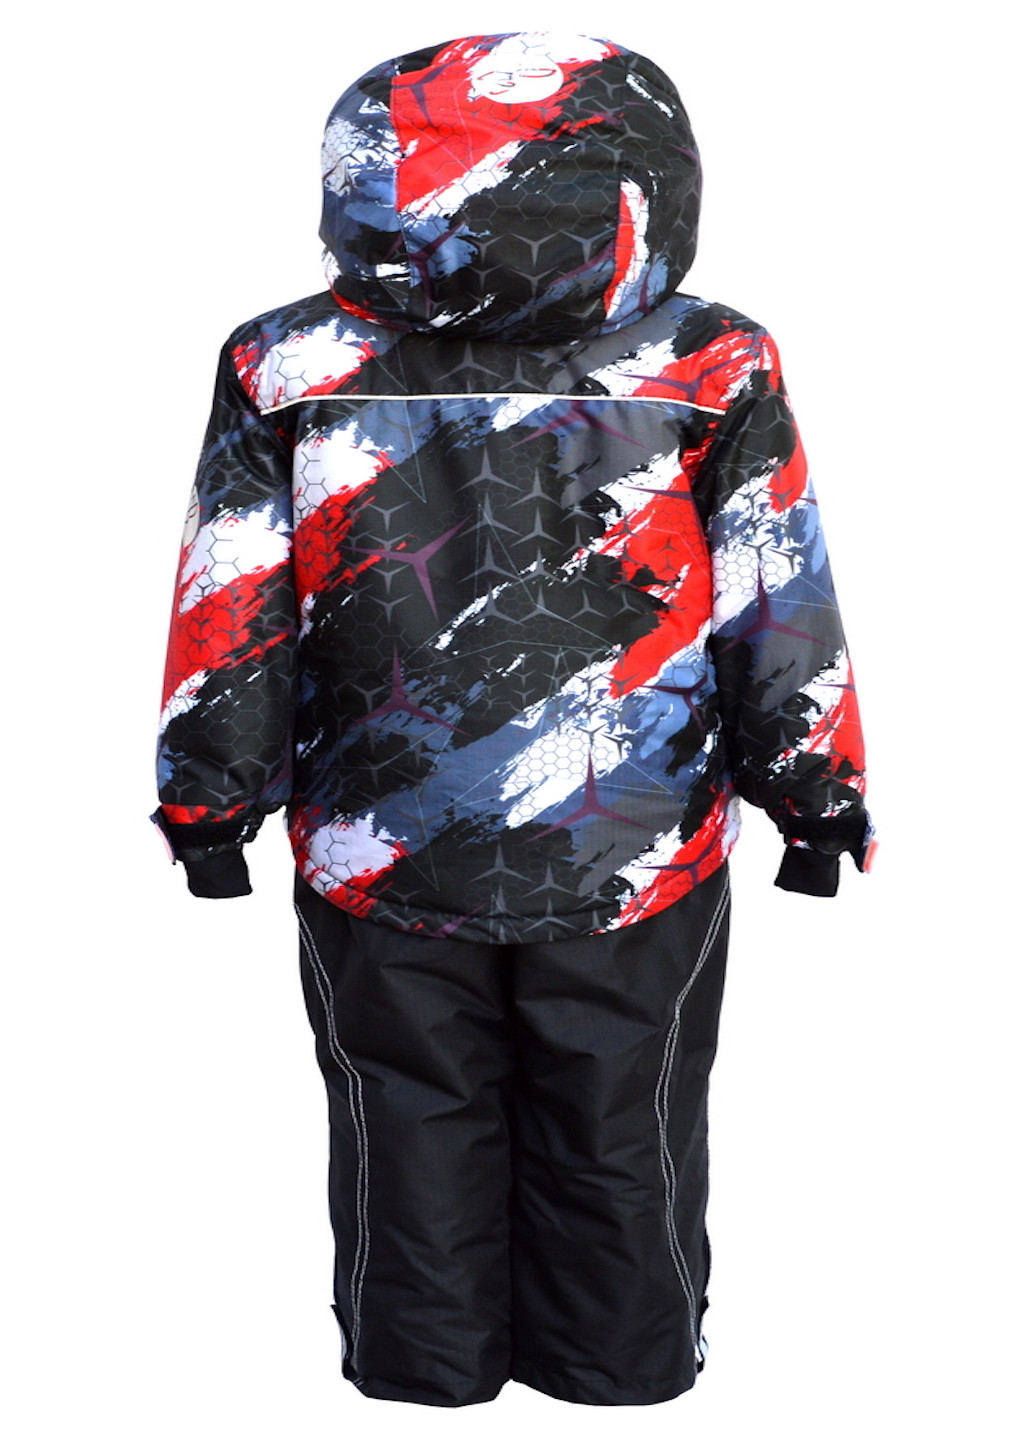 Черный зимний зимний костюм (куртка+полукомбинезон) из мембранной ткани Be easy